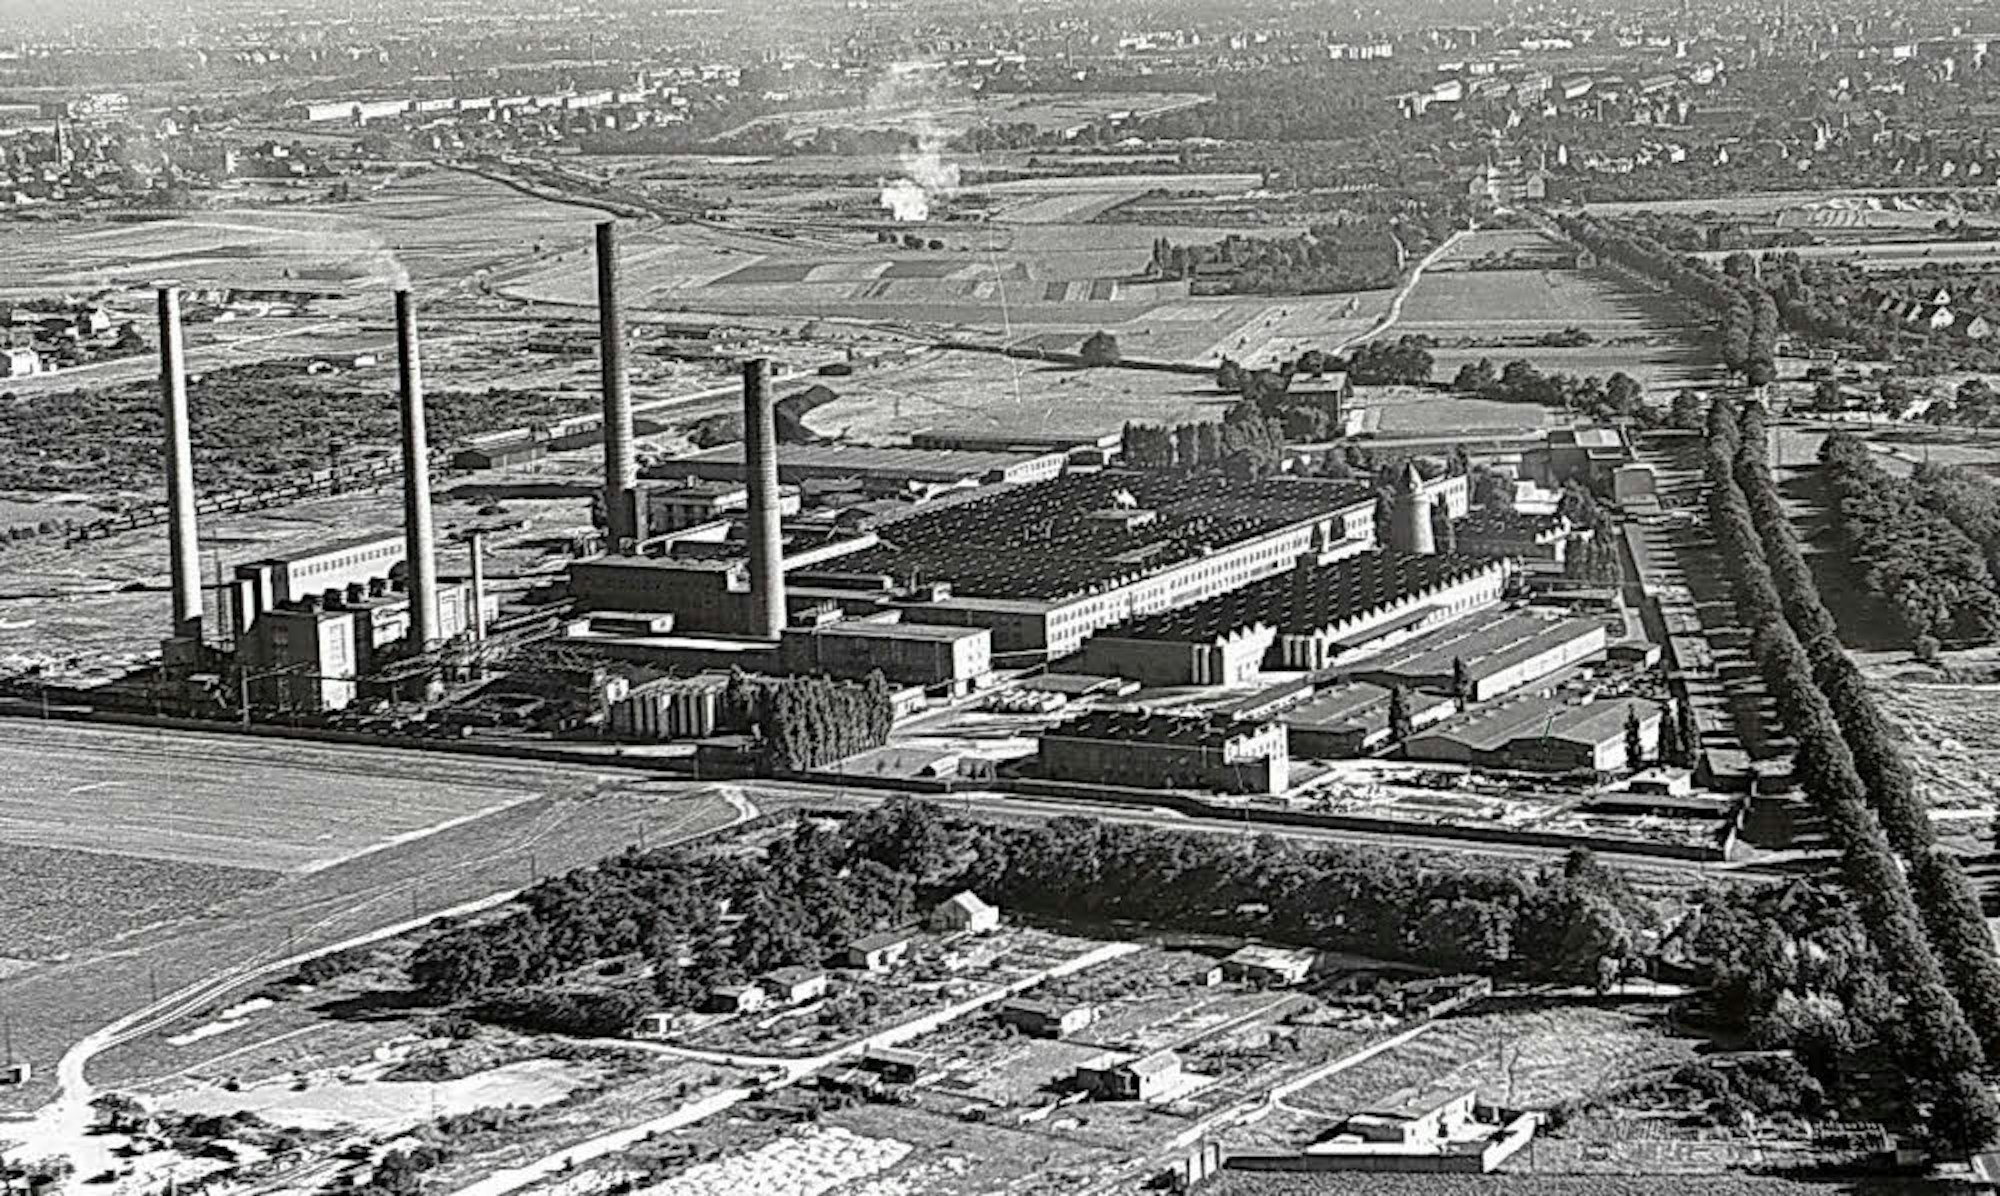 Auf dem weitläufigen Areal der Glanzstoff-Werke in Niehl arbeiteten bis zu 2500 Menschen.